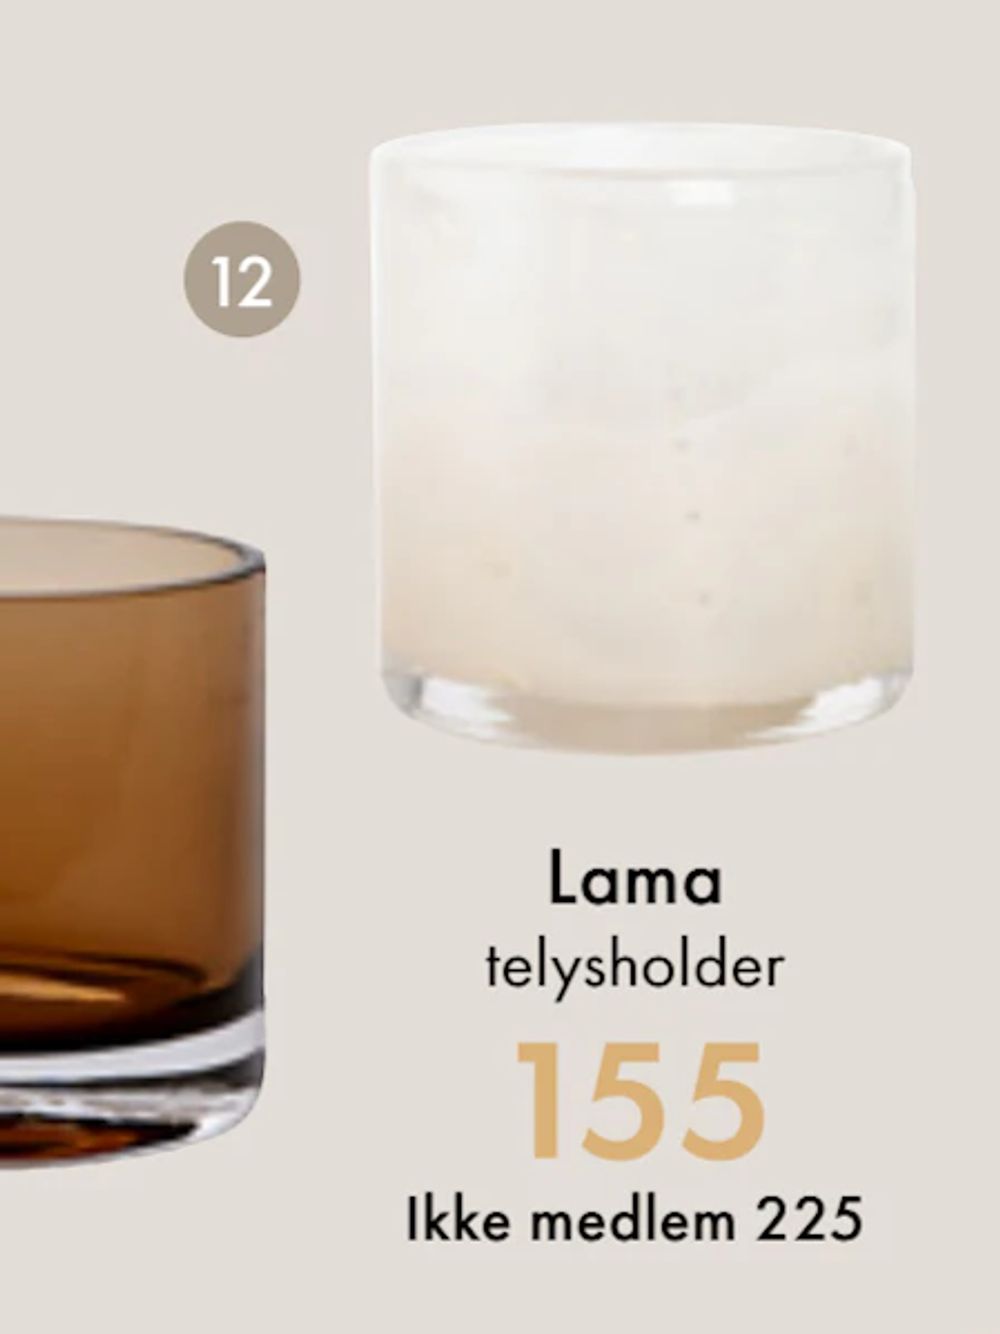 Tilbud på Lama telysholder creme glass fra Fagmøbler til 225 kr